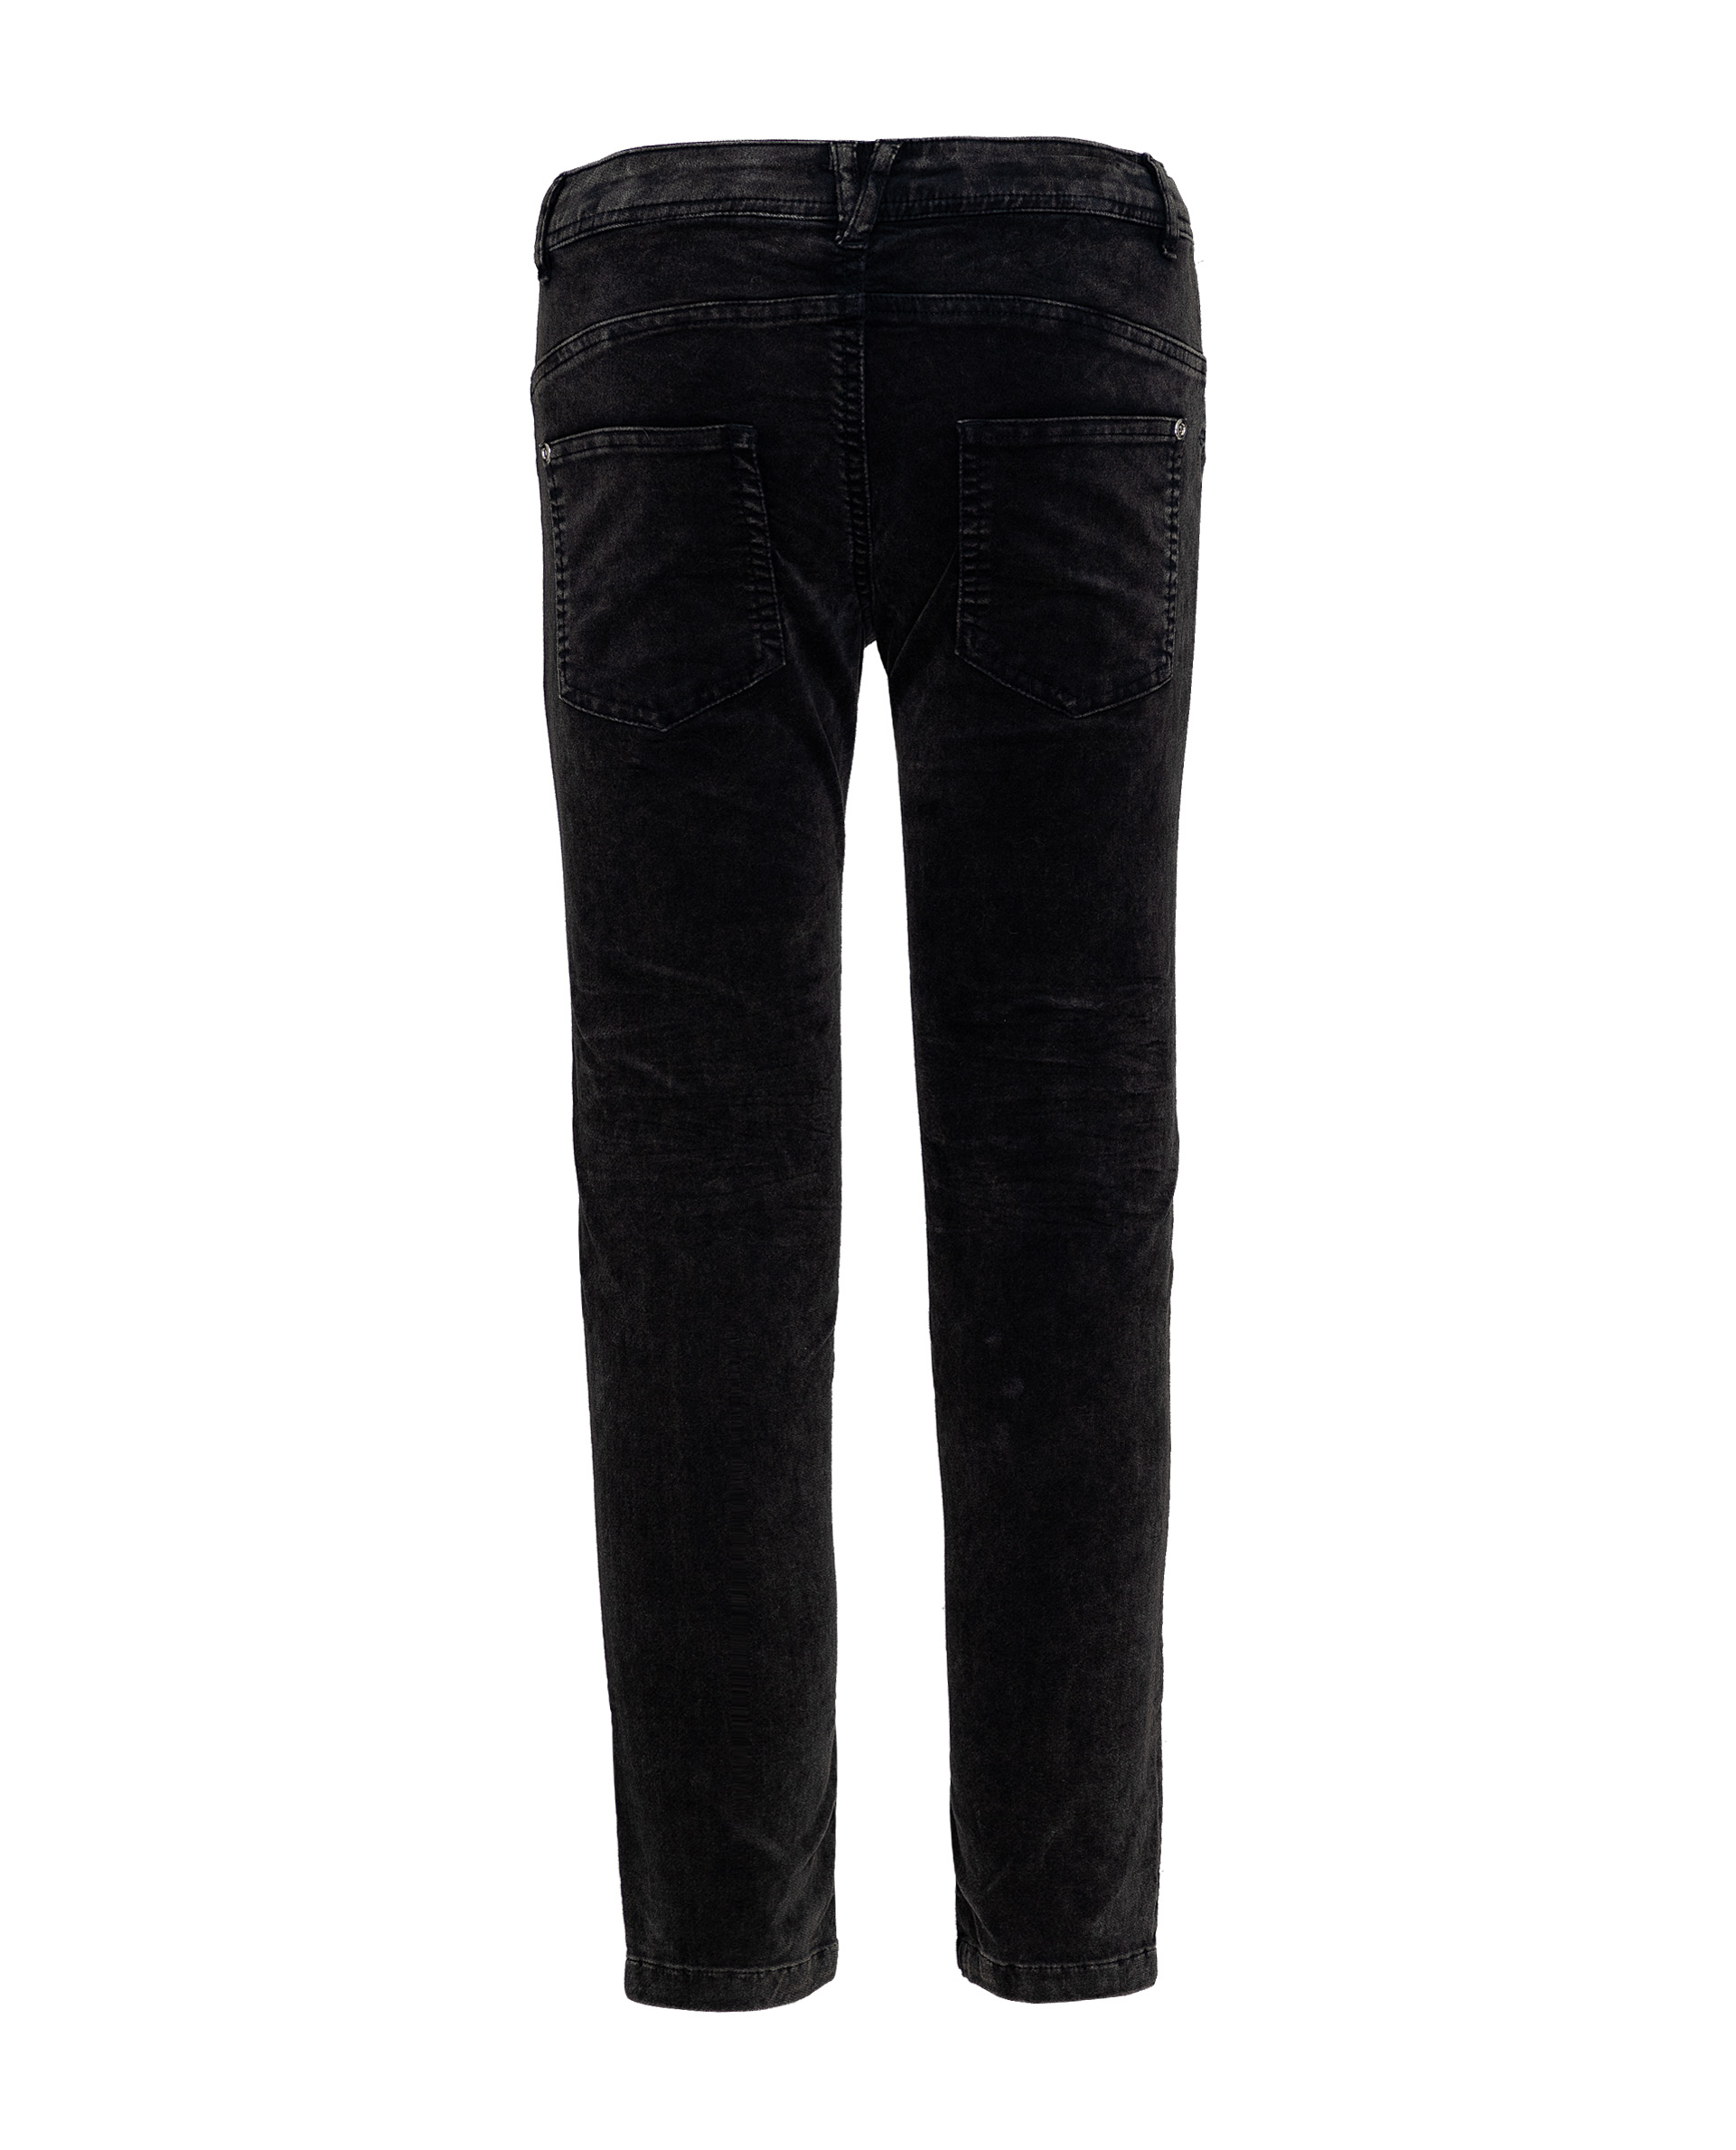 Серые брюки Gulliver 21909GJC6305, размер 158, цвет серый - фото 2